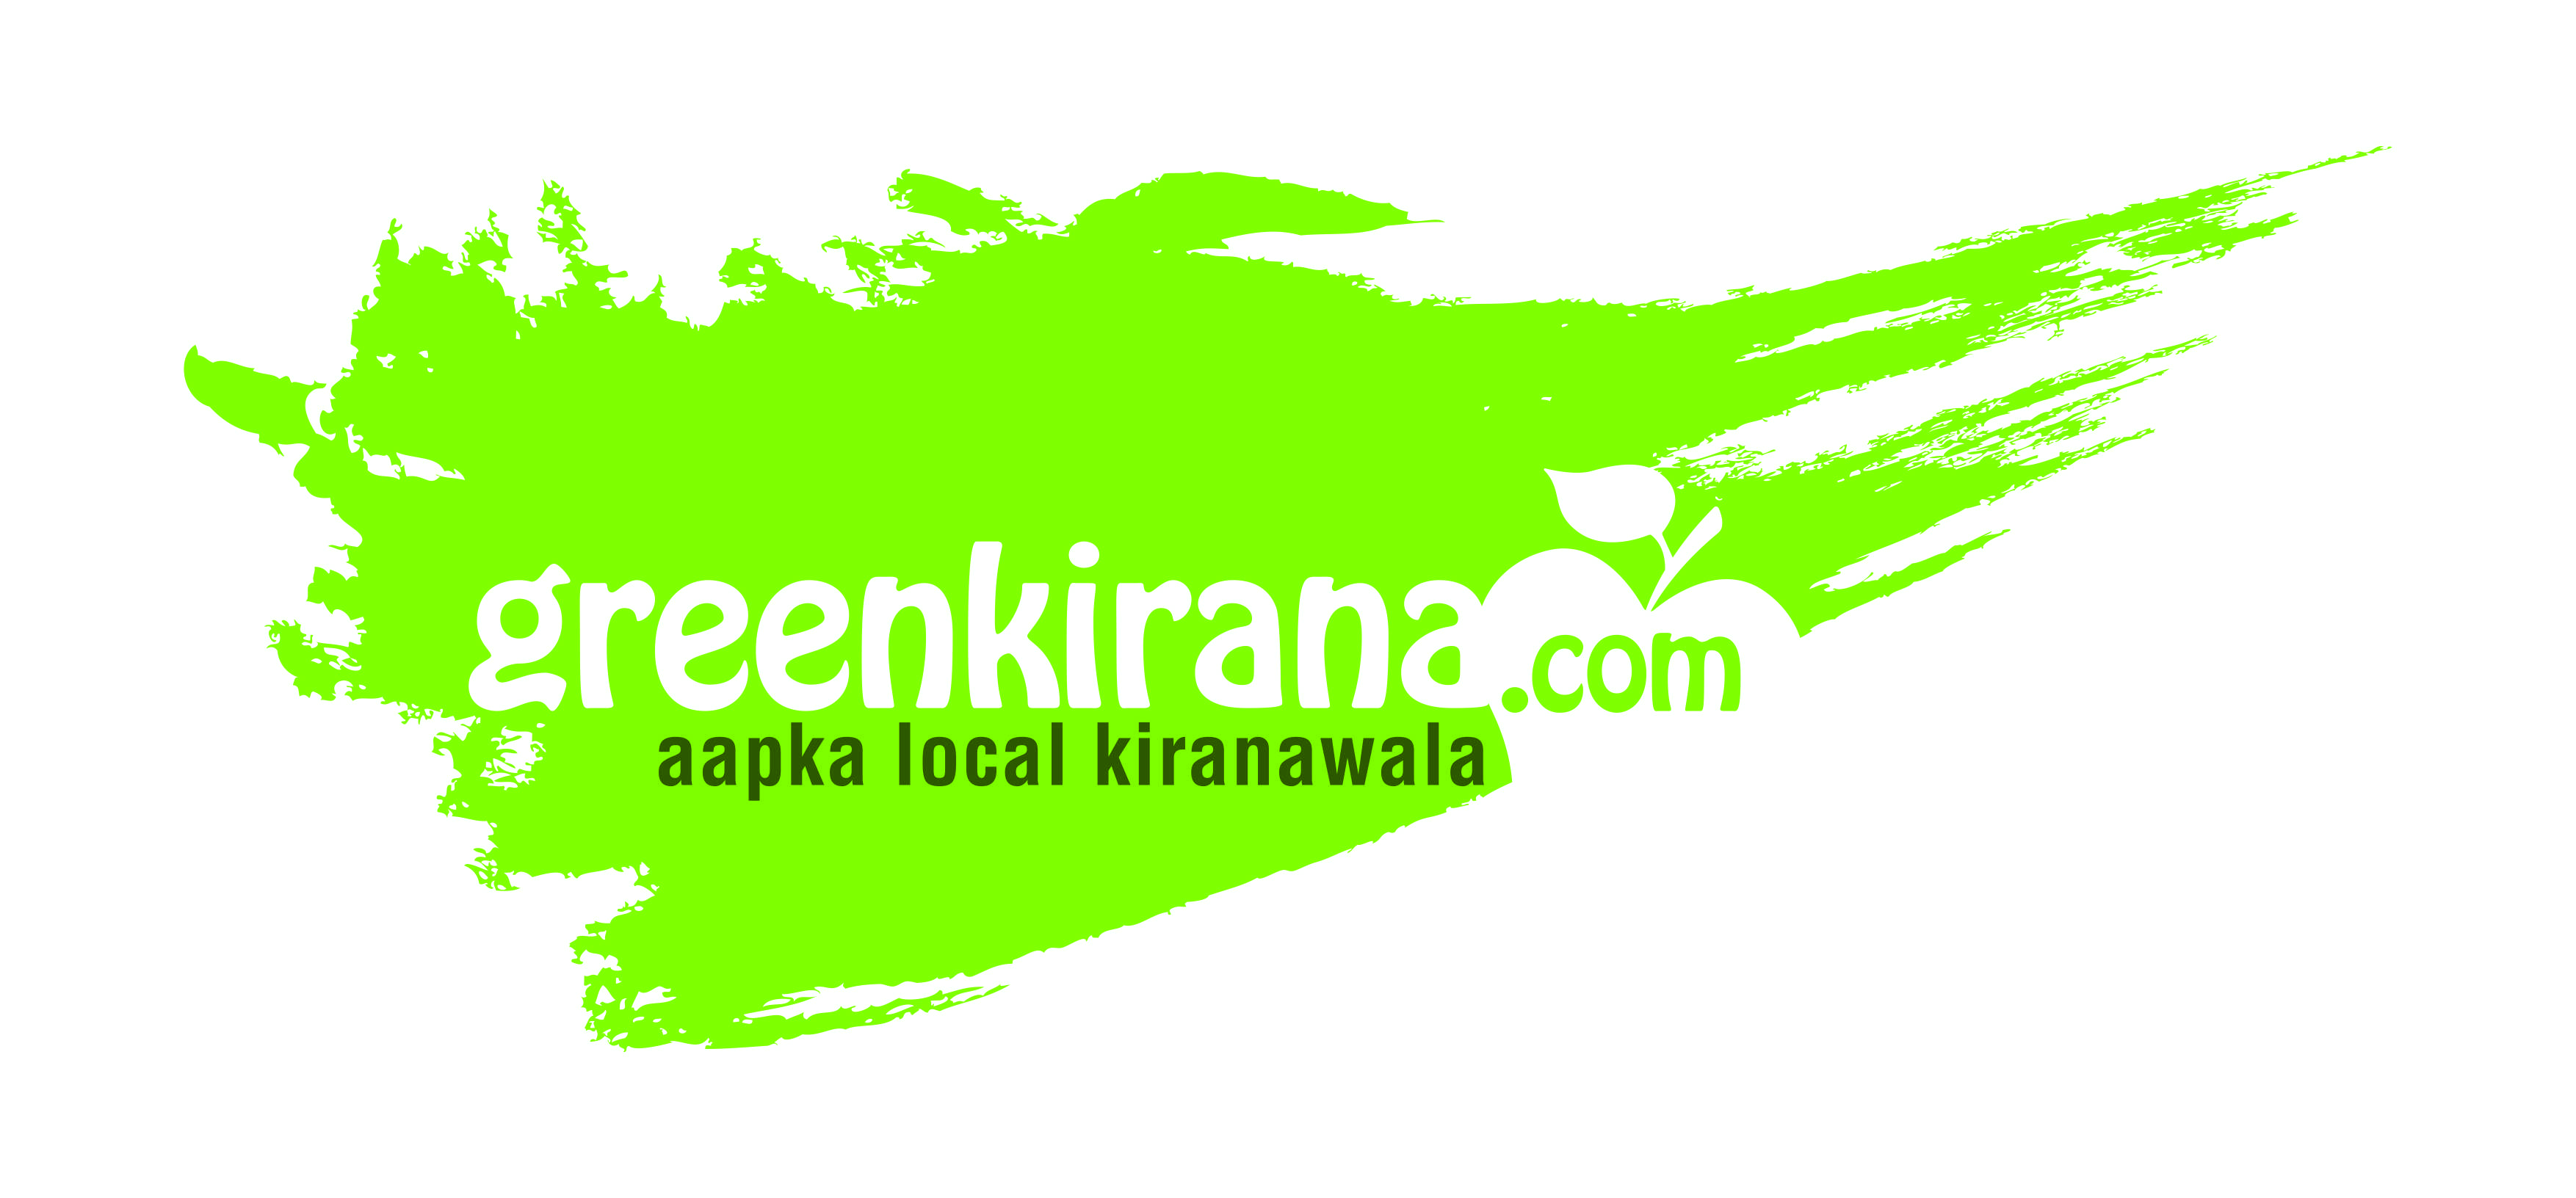 Greenkirana logo